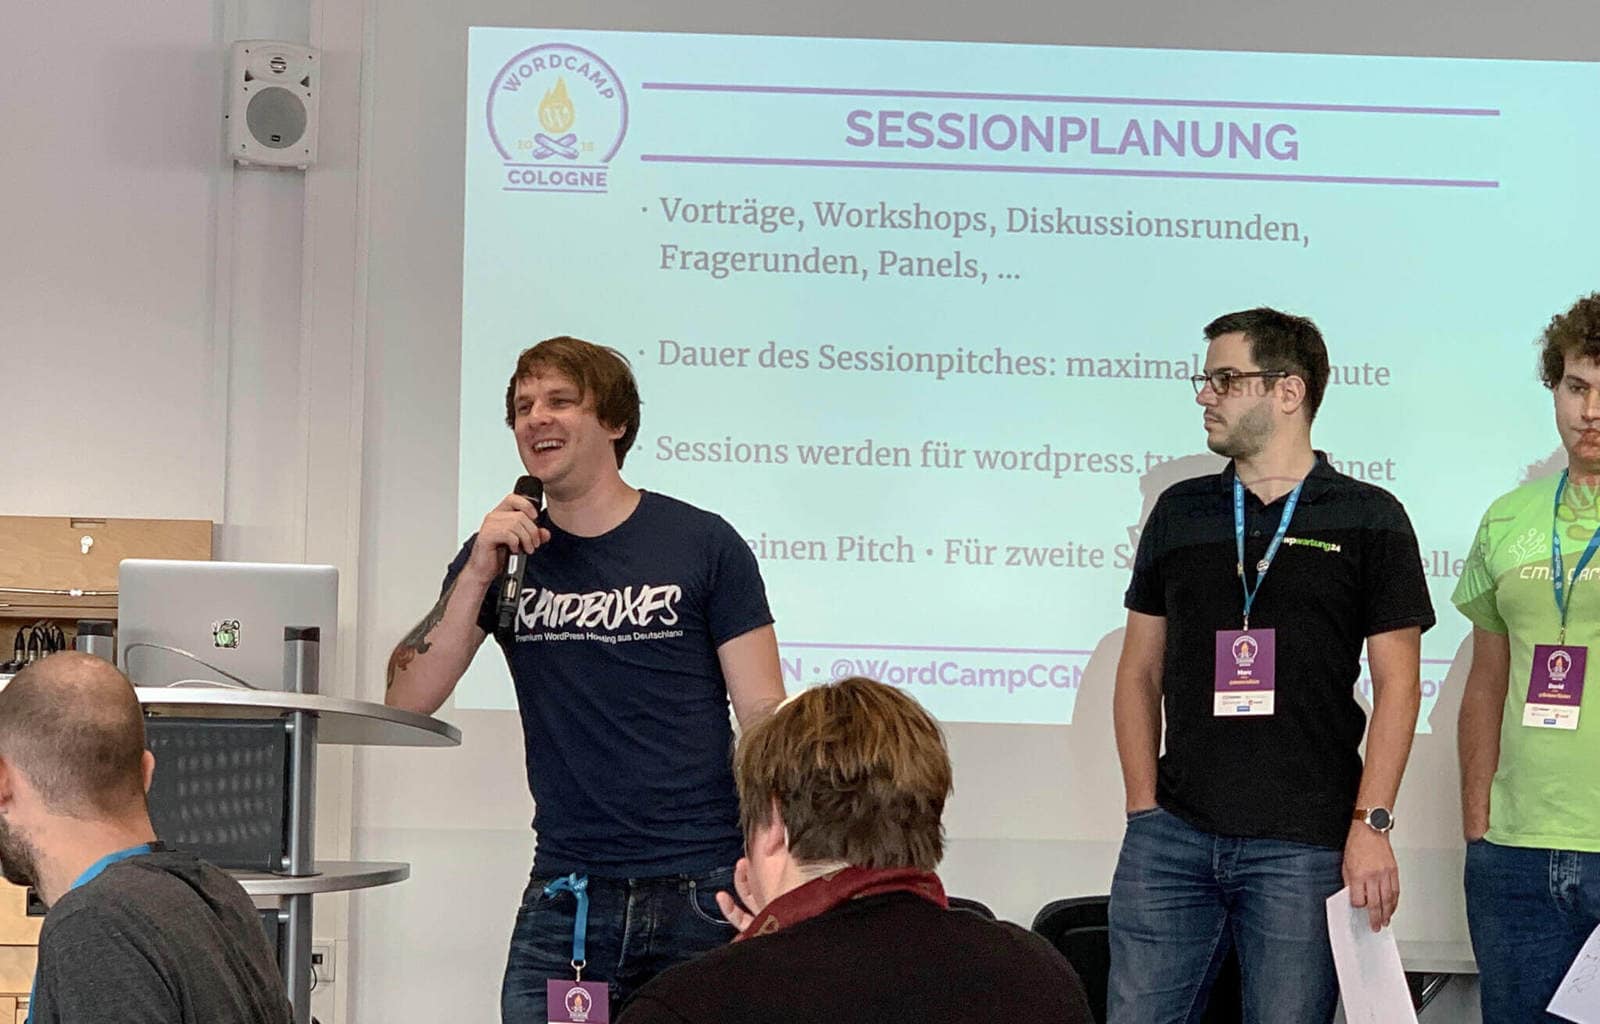 WordCamp Colonia: Matthias von Raidboxes en el lanzamiento de la sesión